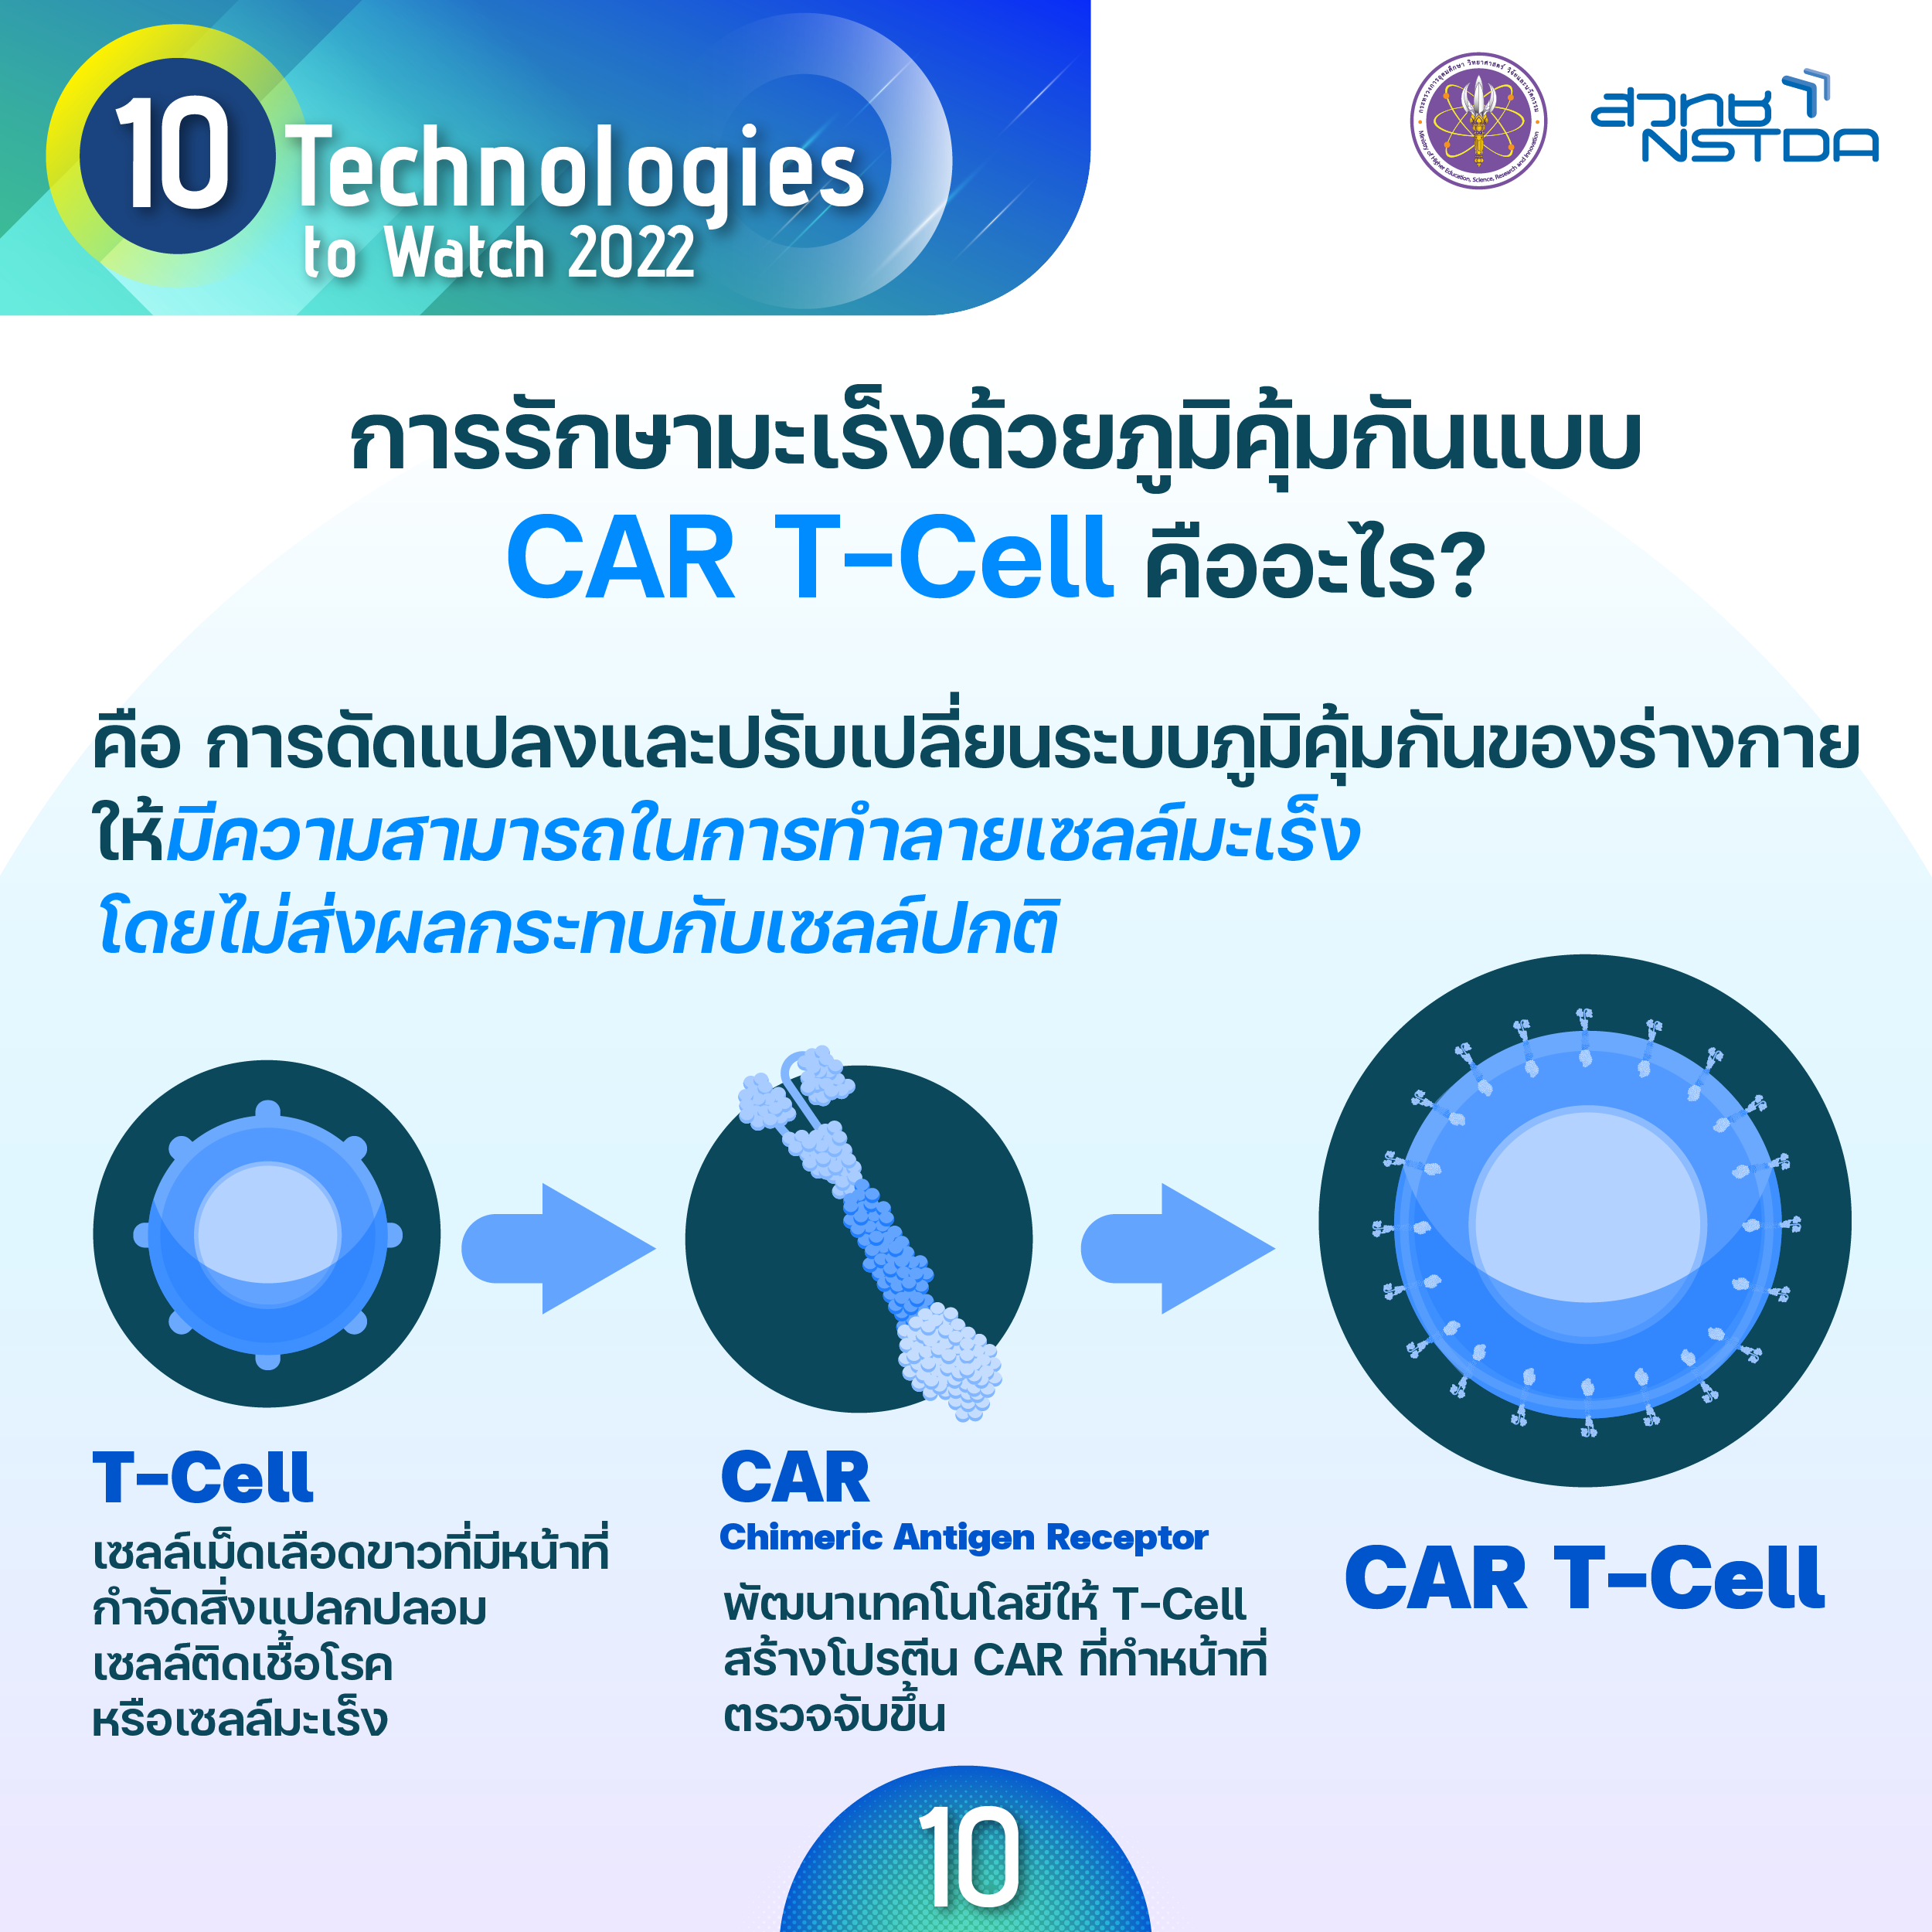 การรักษามะเร็งด้วยภูมิคุ้มกันแบบ CAR T–Cell (Chimeric Antigen Receptor T-Cell Therapy)